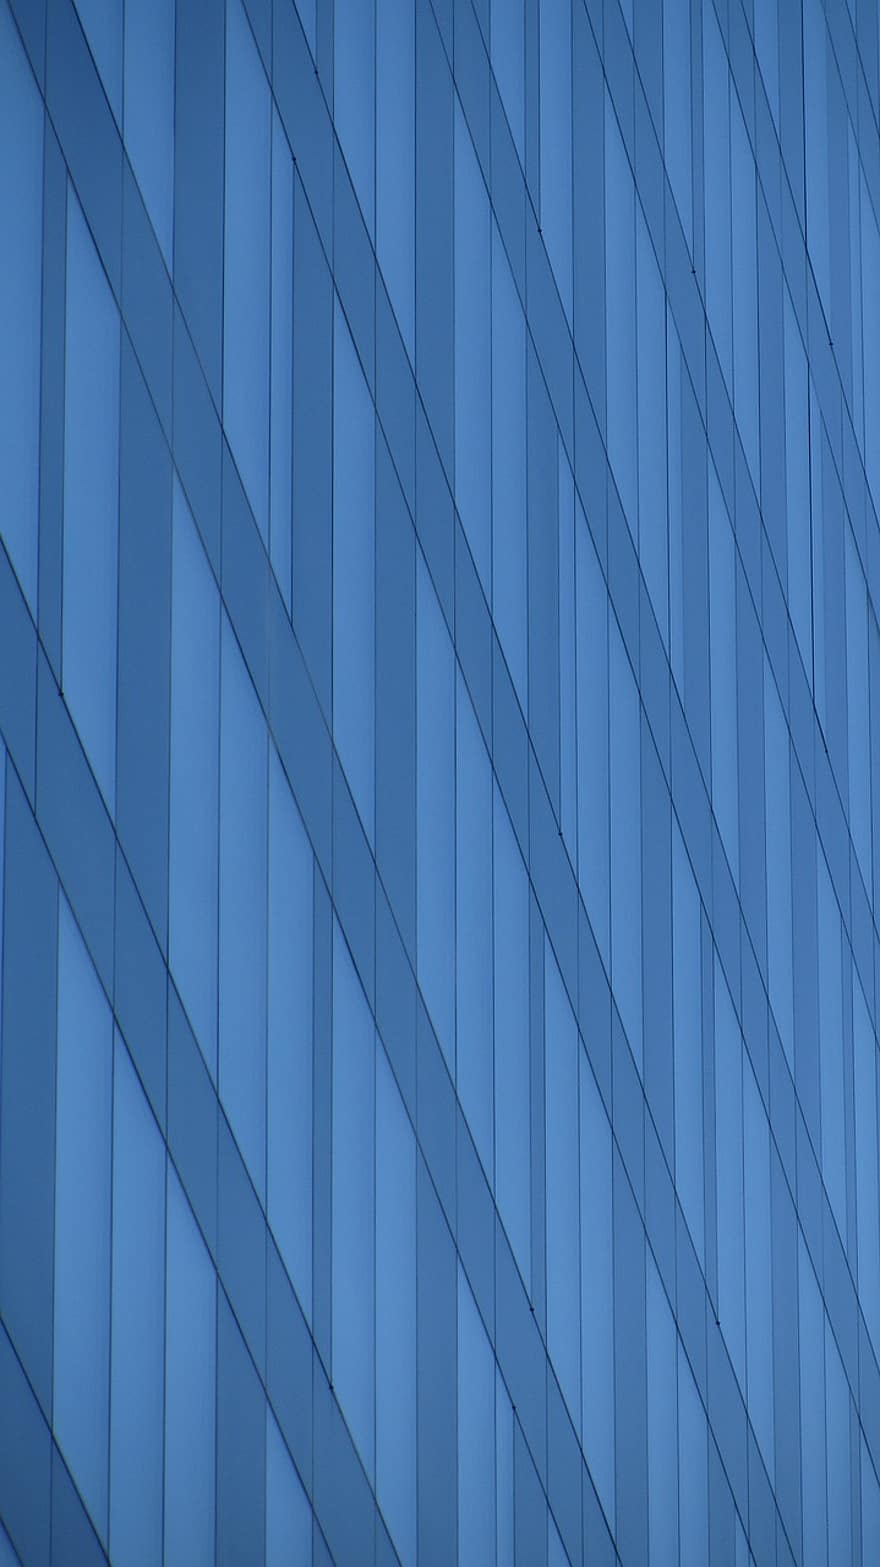 Prédio comercial, janela, moderno, inclinações, linhas, padronizar, abstrato, origens, arquitetura, desenhar, azul